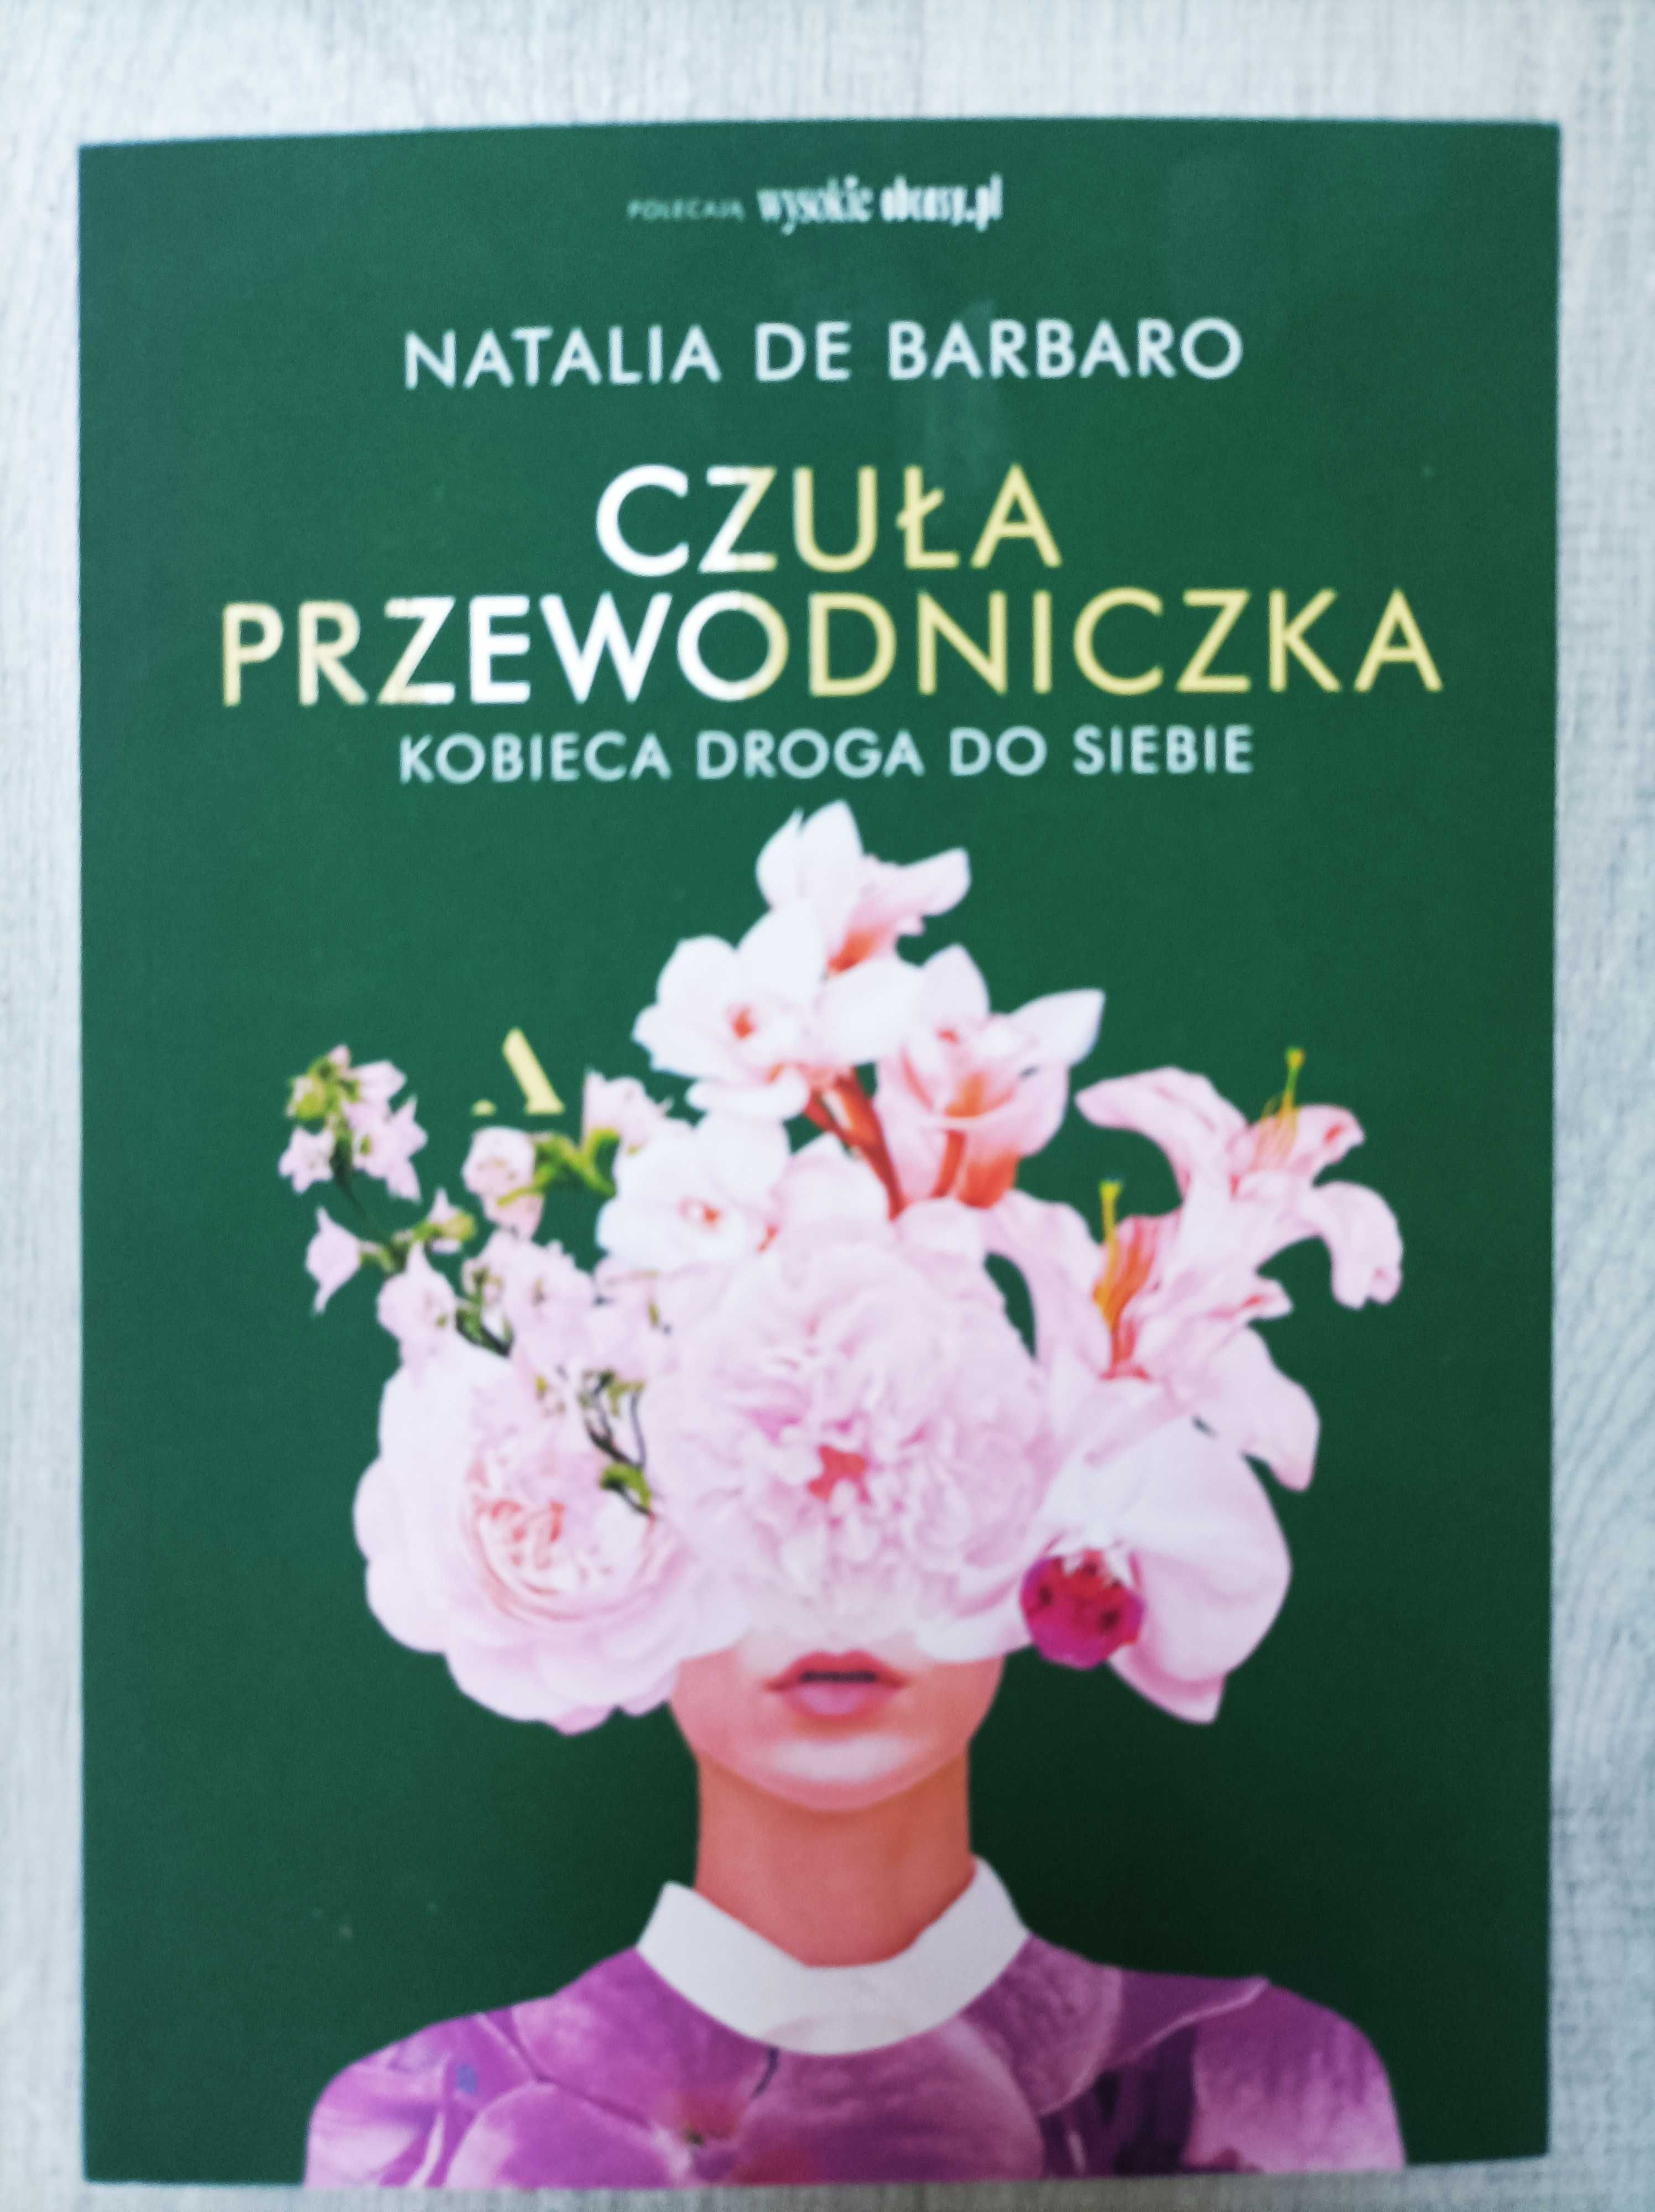 "Czuła przewodniczka" Natalia de Barbaro